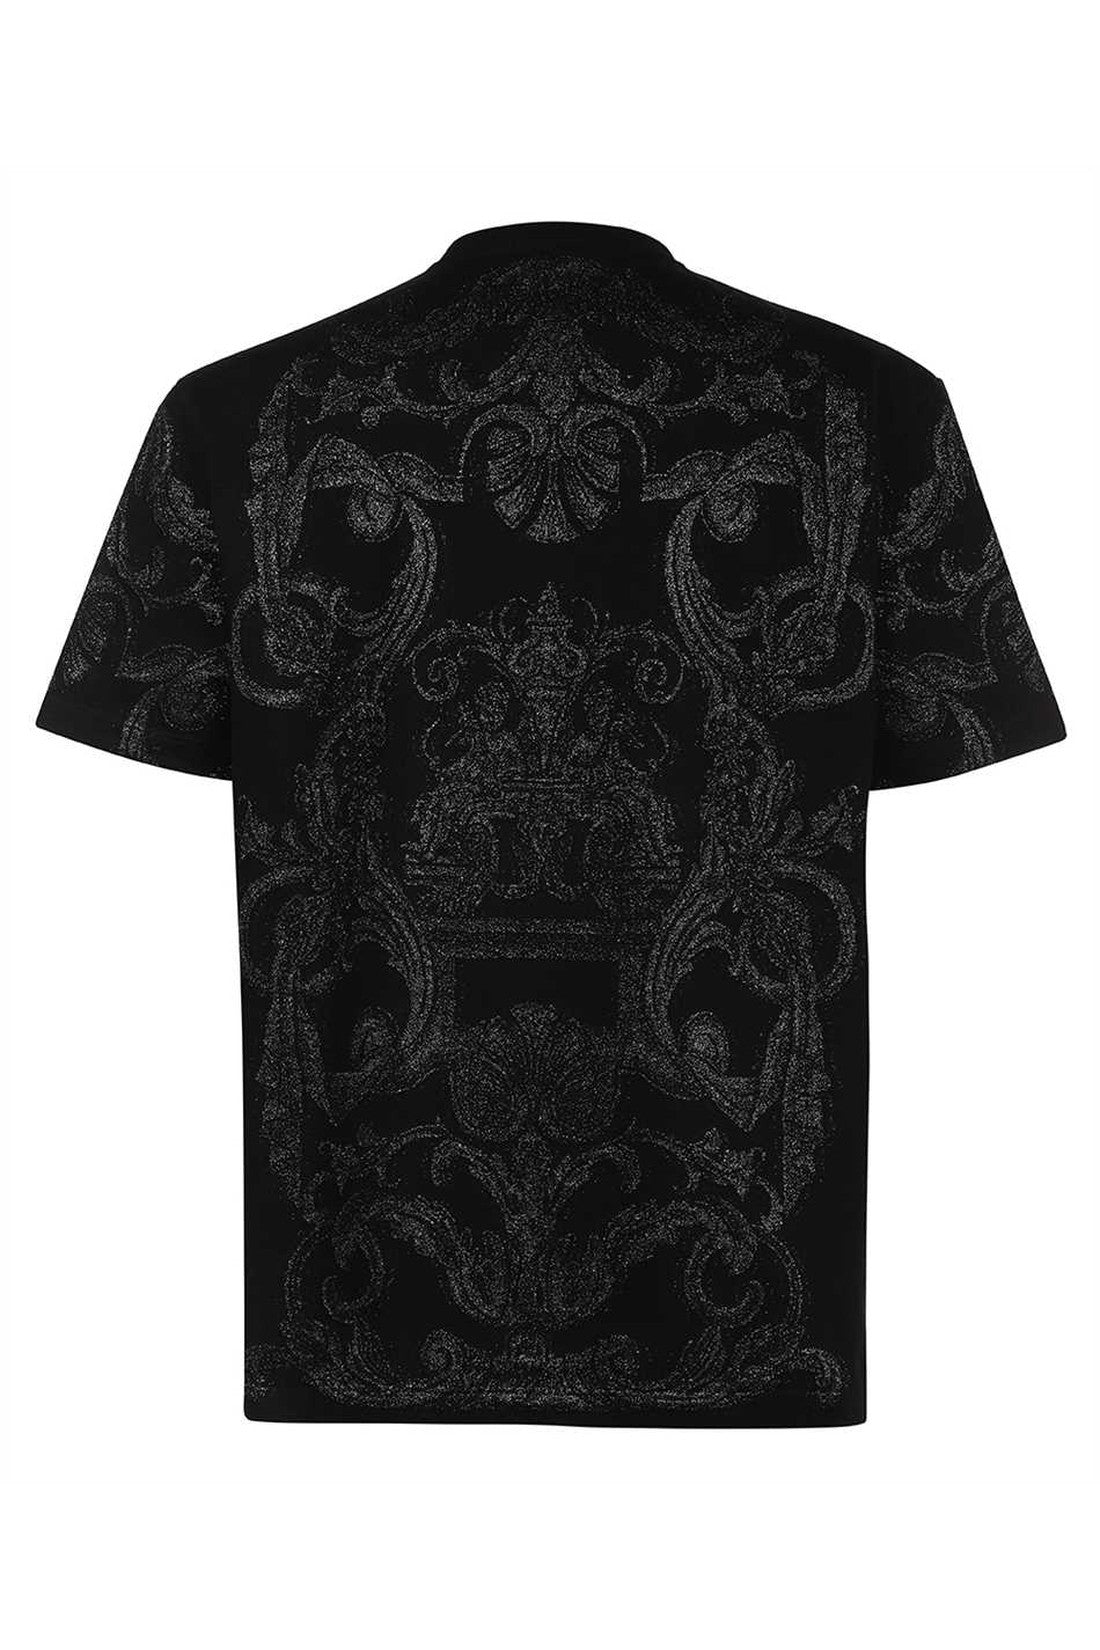 Crew-neck t-shirt-Versace-OUTLET-SALE-ARCHIVIST